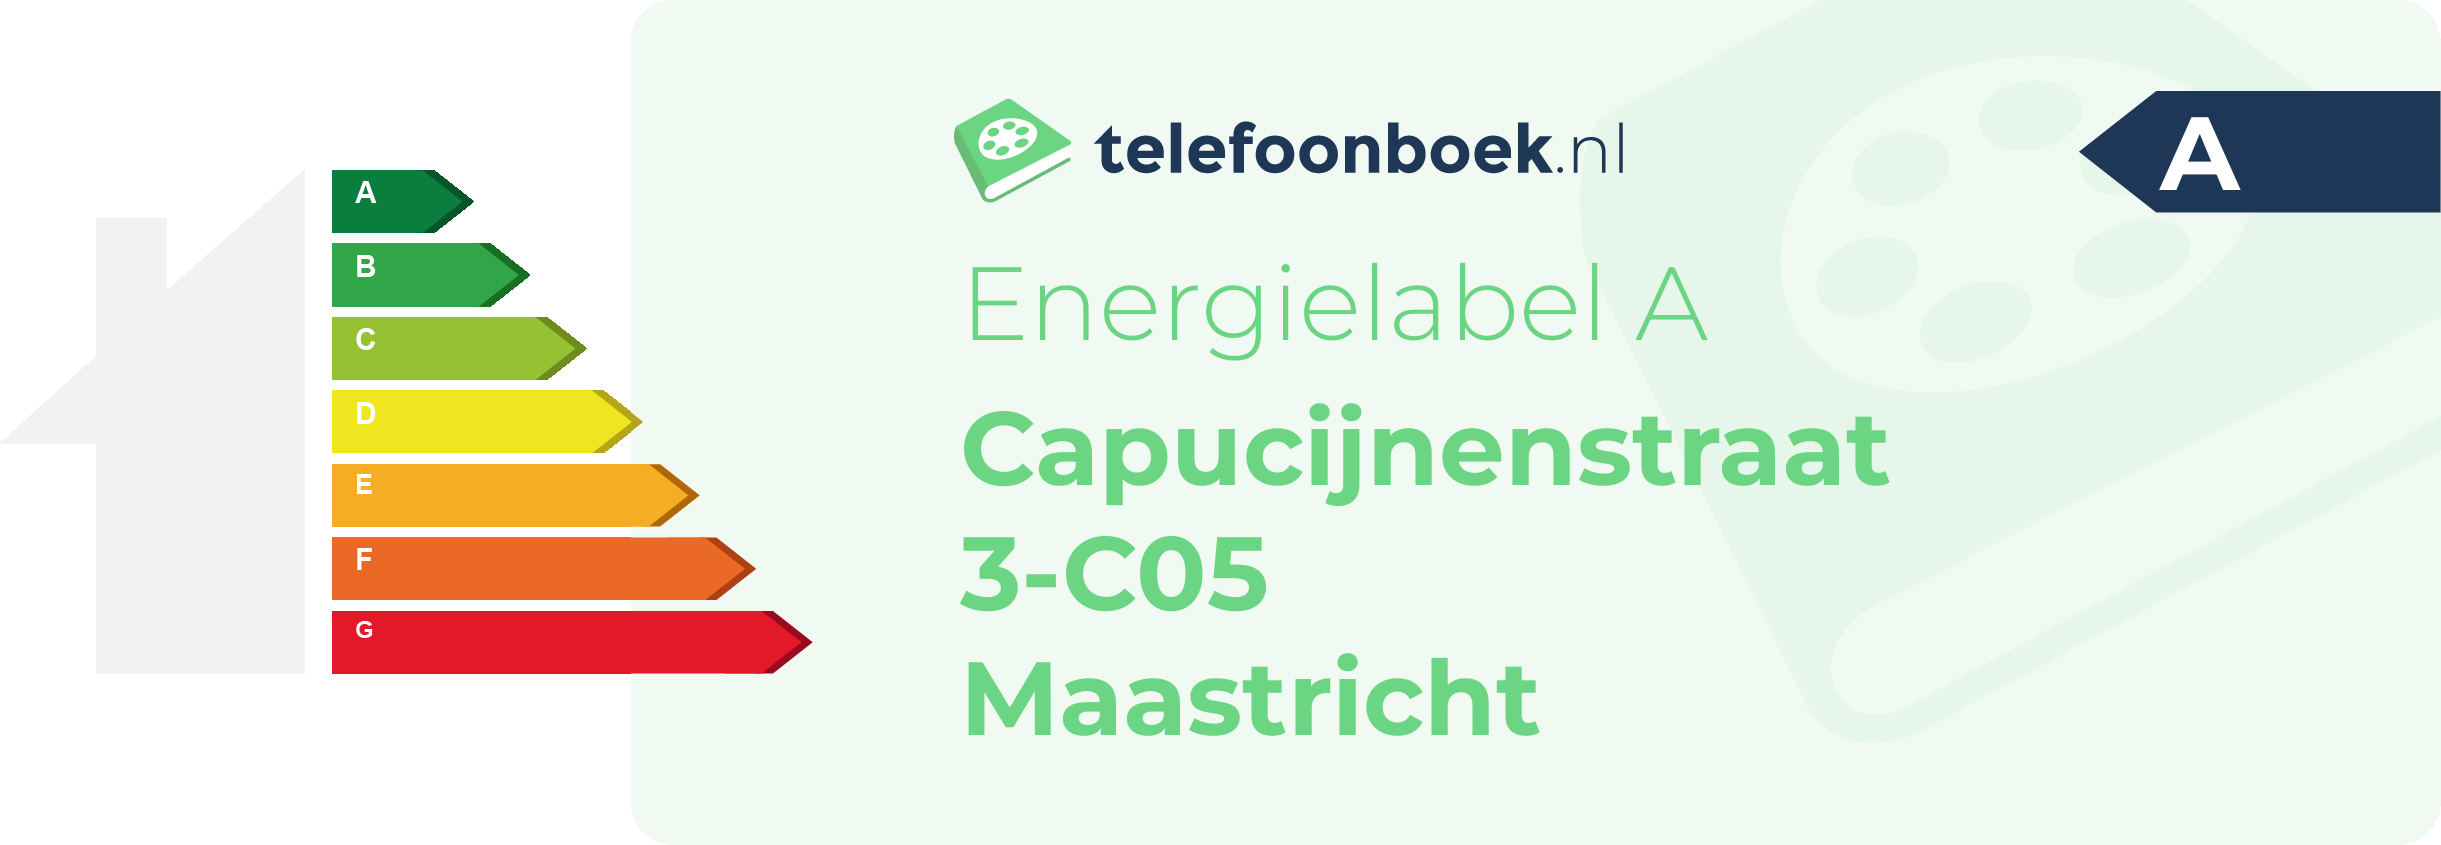 Energielabel Capucijnenstraat 3-C05 Maastricht